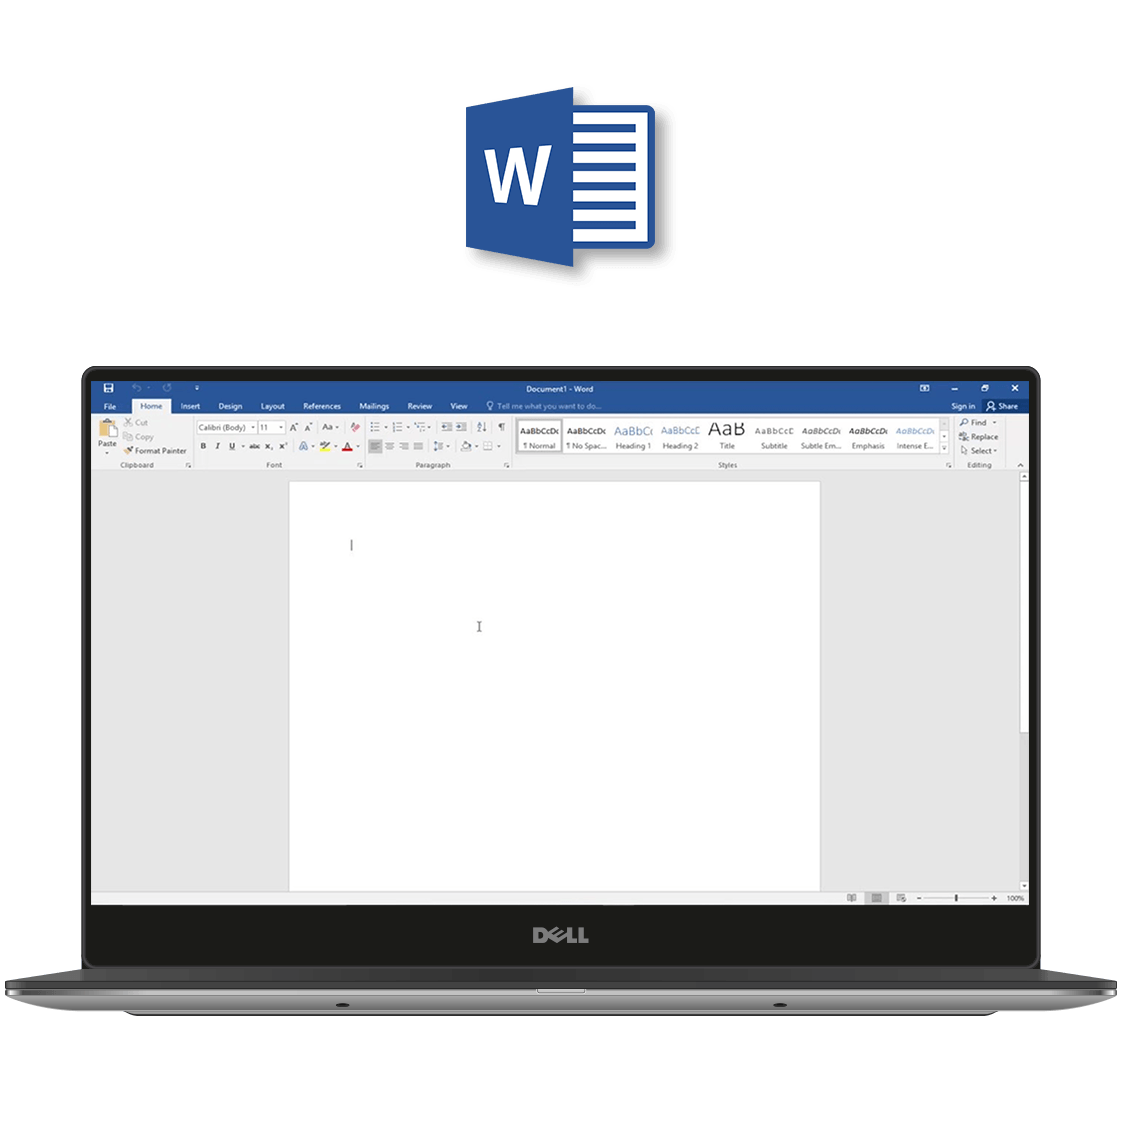 Ofertas de licencia de Microsoft Word 2016.com